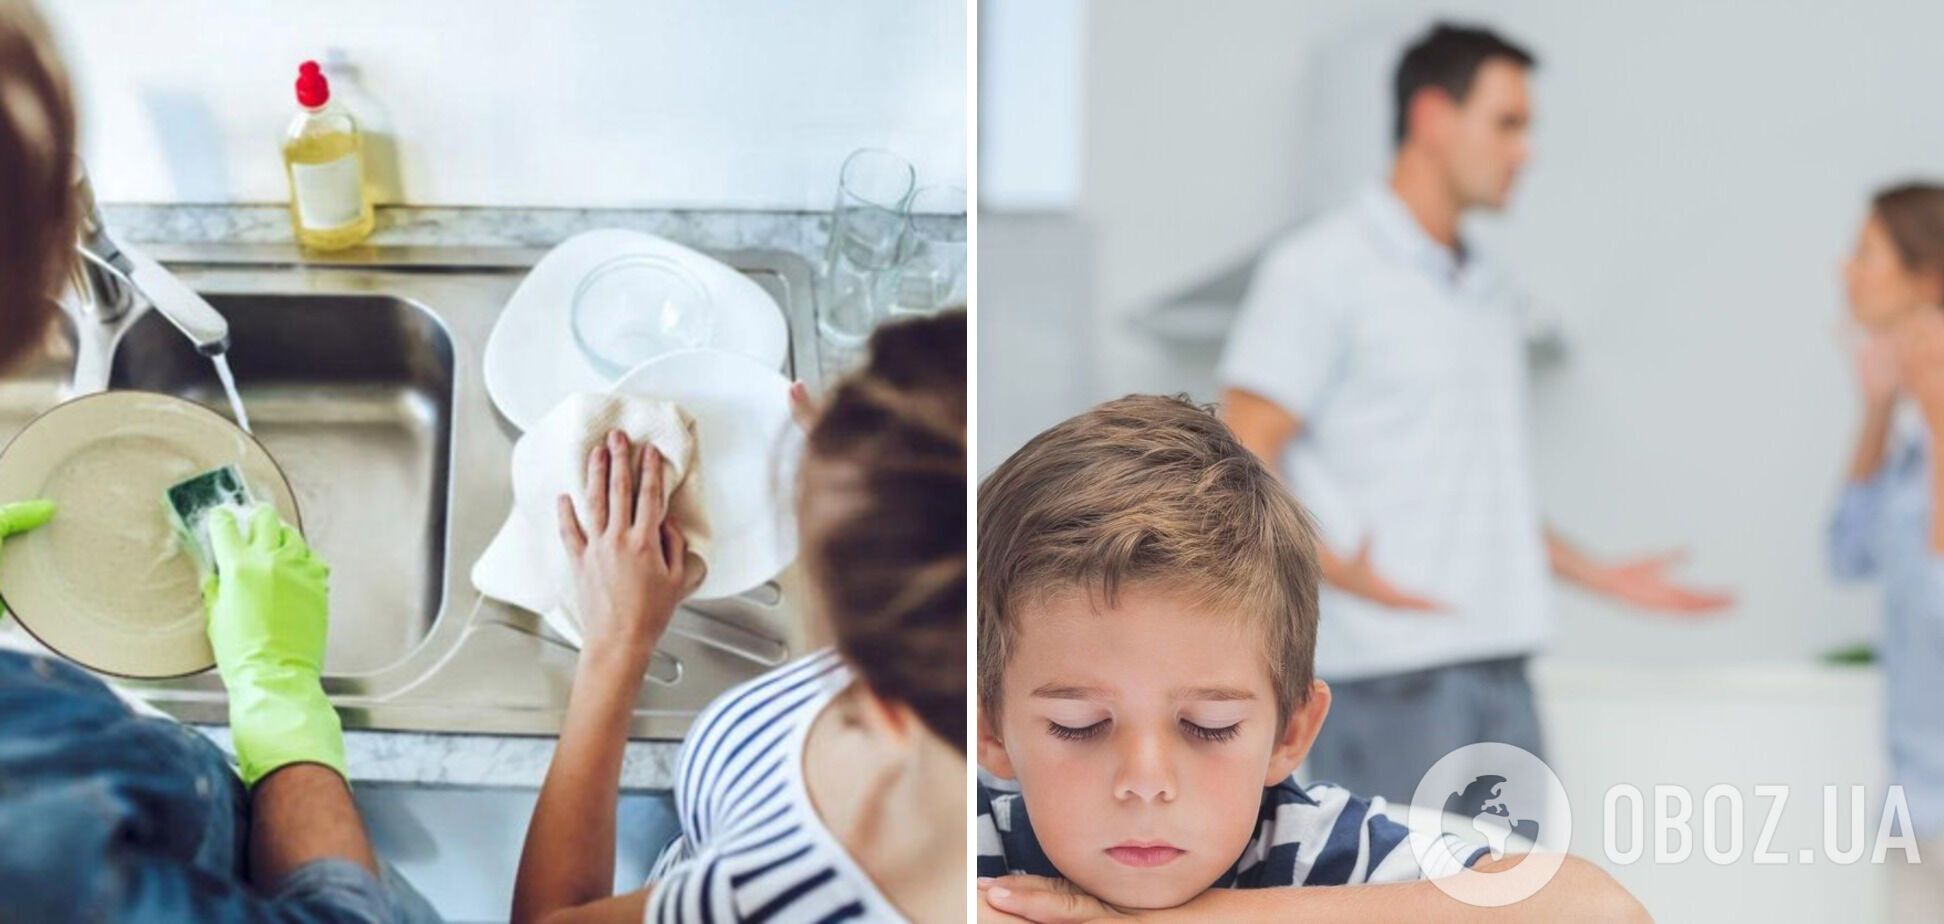 Почему нельзя мыть посуду в гостях: суть суеверия